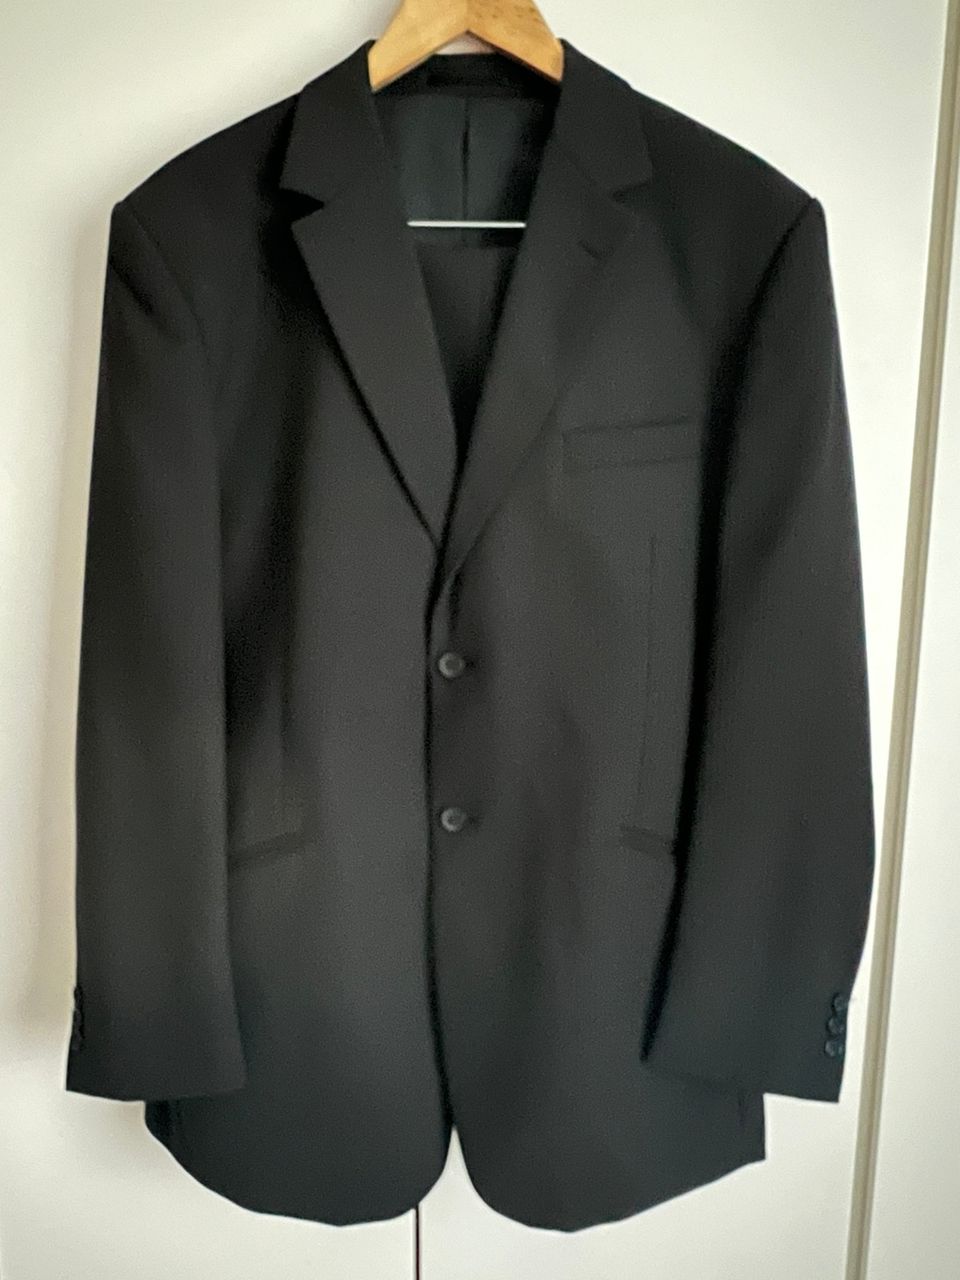 Miesten puku, musta/liituraita, koko C52